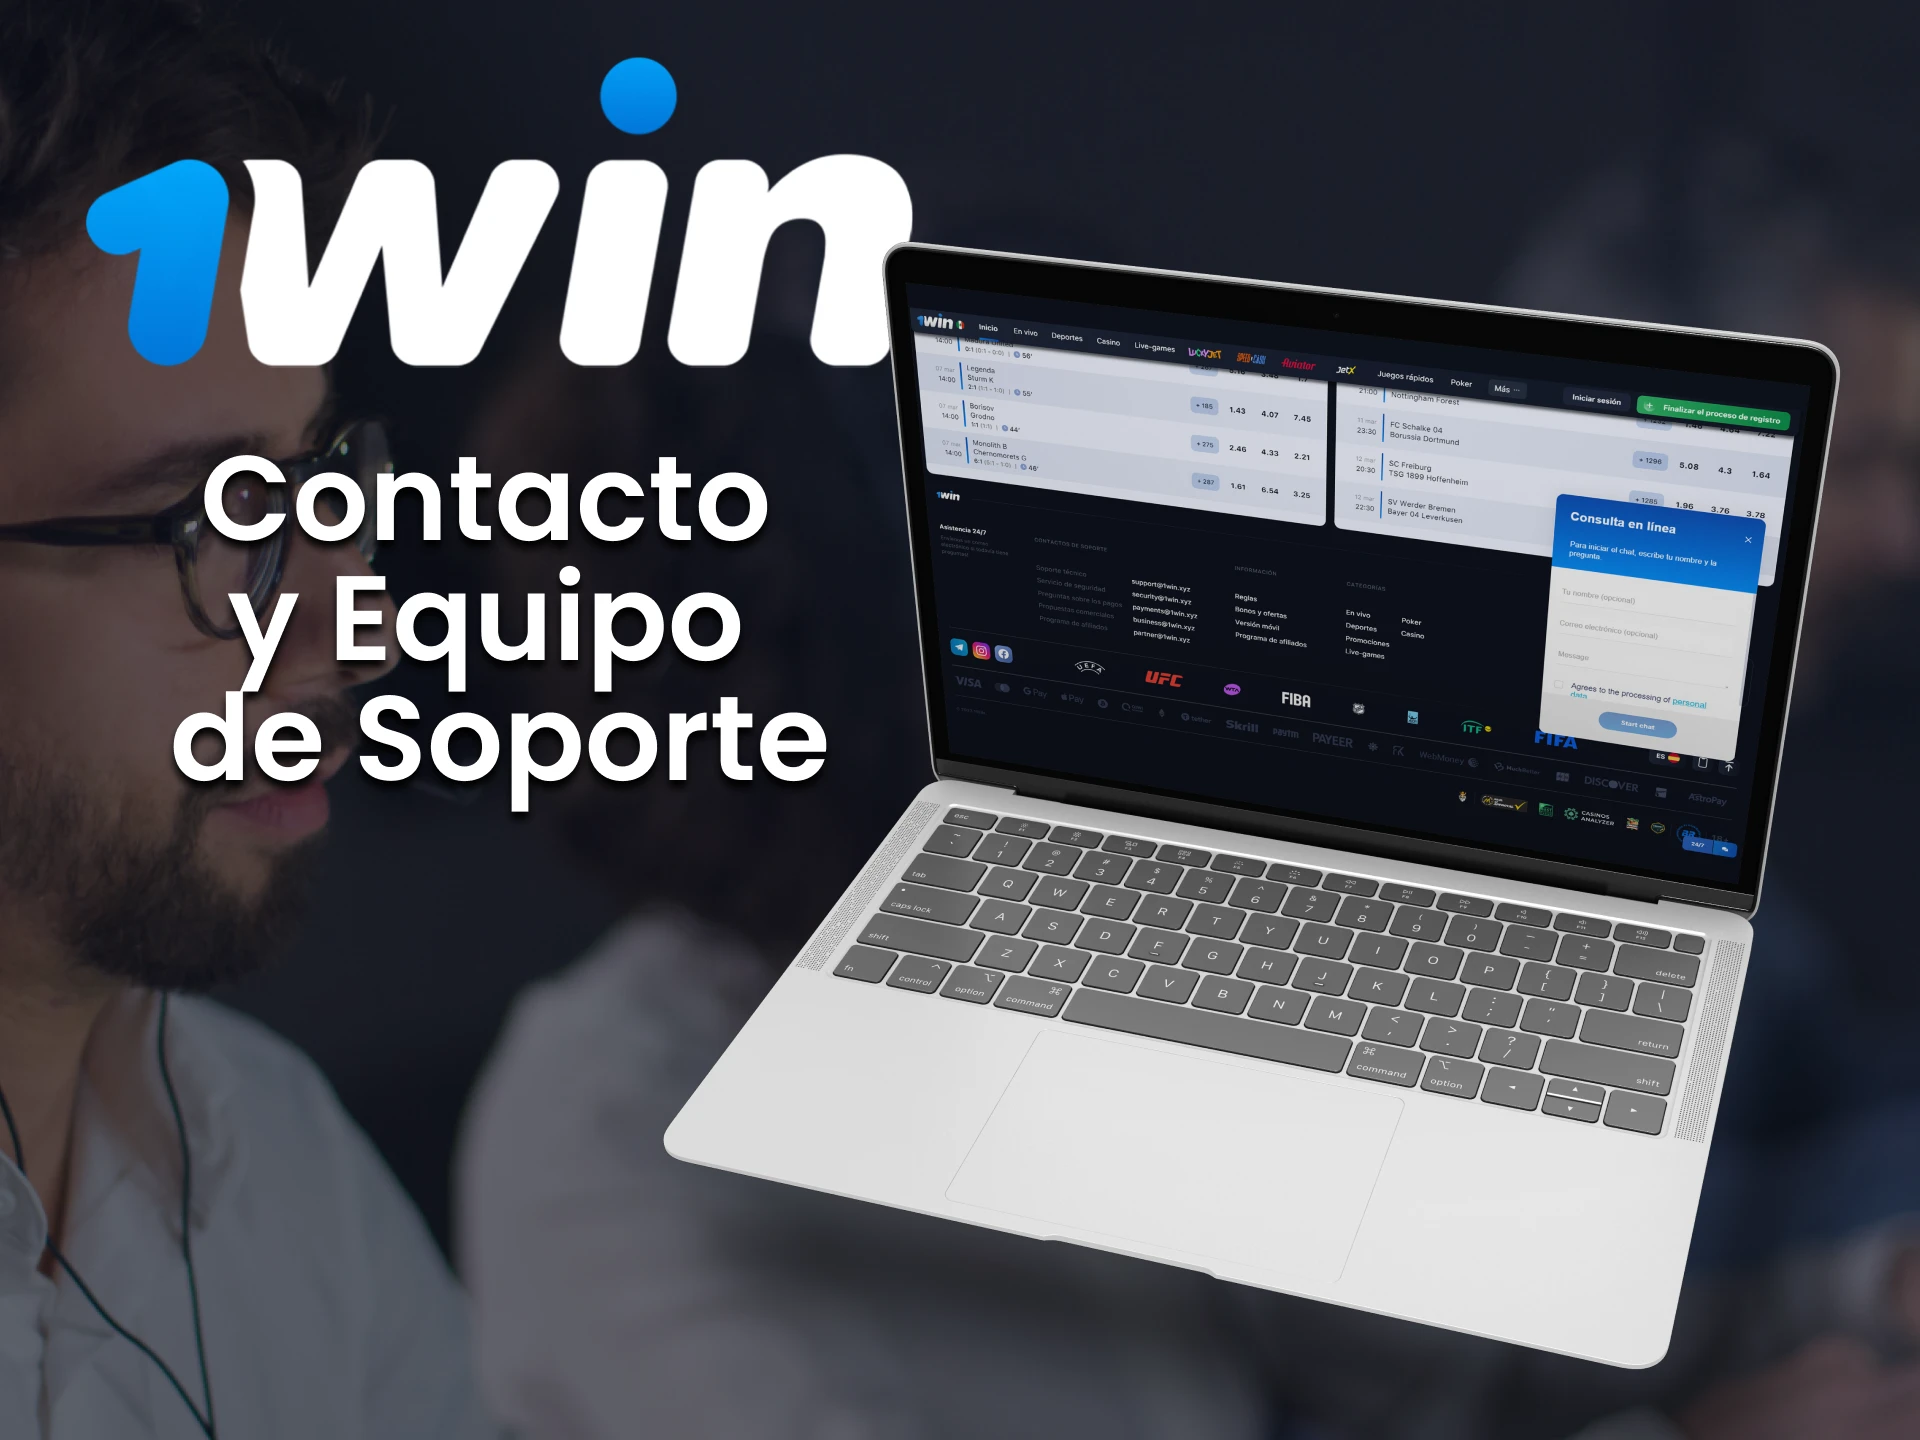 El equipo de soporte de 1win siempre está en contacto con sus usuarios en México.